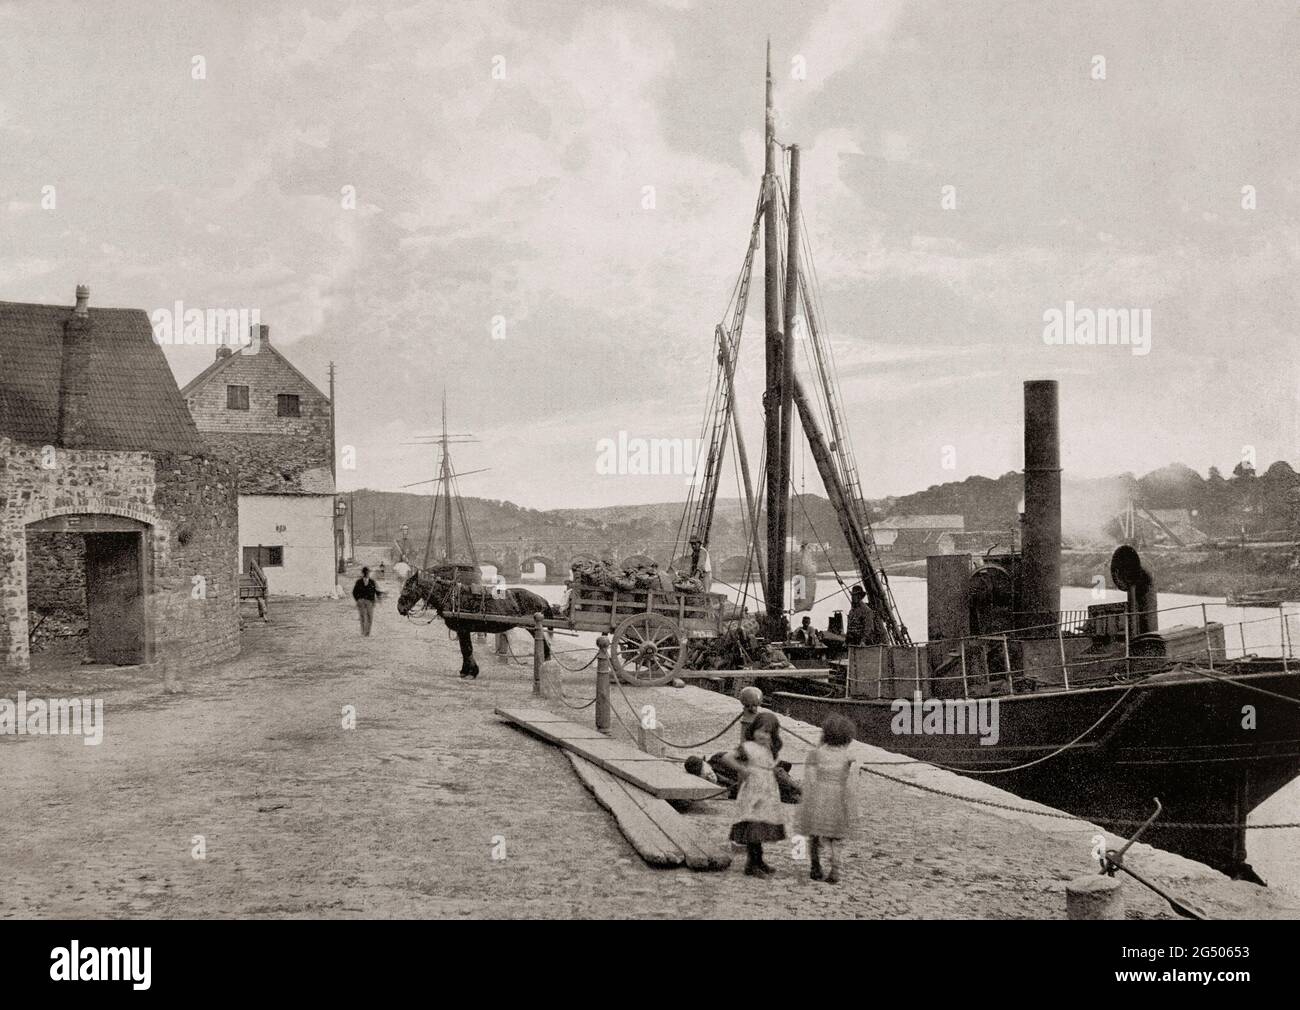 Vue de la fin du XIXe siècle d'un petit bateau à vapeur côtier relié au quai de Carmarthen, situé sur la rivière Tywi, au pays de Galles. Vue de la fin du XIXe siècle d'un petit bateau à vapeur côtier relié au quai de Carmarthen, situé sur la rivière Tywi, au pays de Galles. La ville de comté de Carmarthenshire, elle prétend être la plus ancienne ville du pays de Galles – la vieille ville de Carmarthen et la ville de New Carmarthen sont devenues un quartier en 1546. Banque D'Images